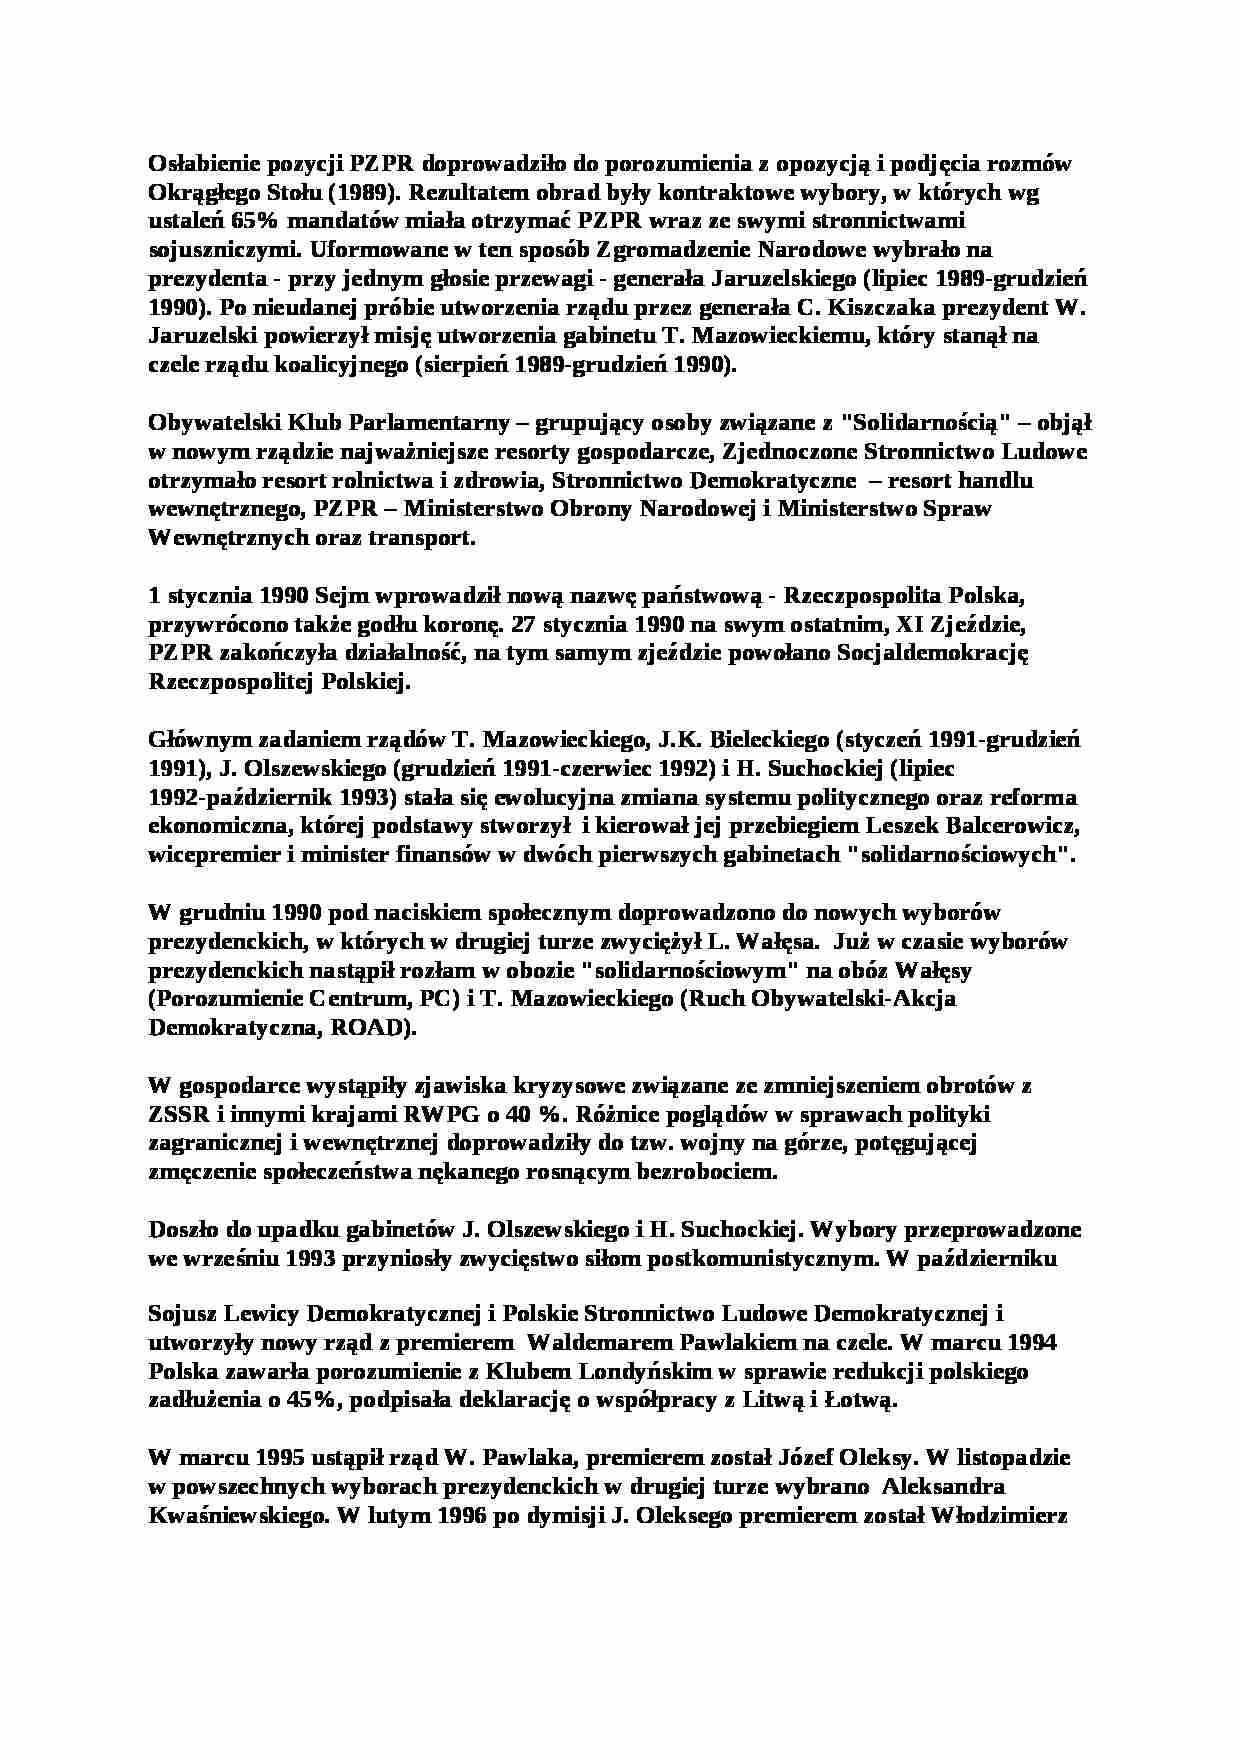 Scena polityczna polska po 1989 roku - strona 1